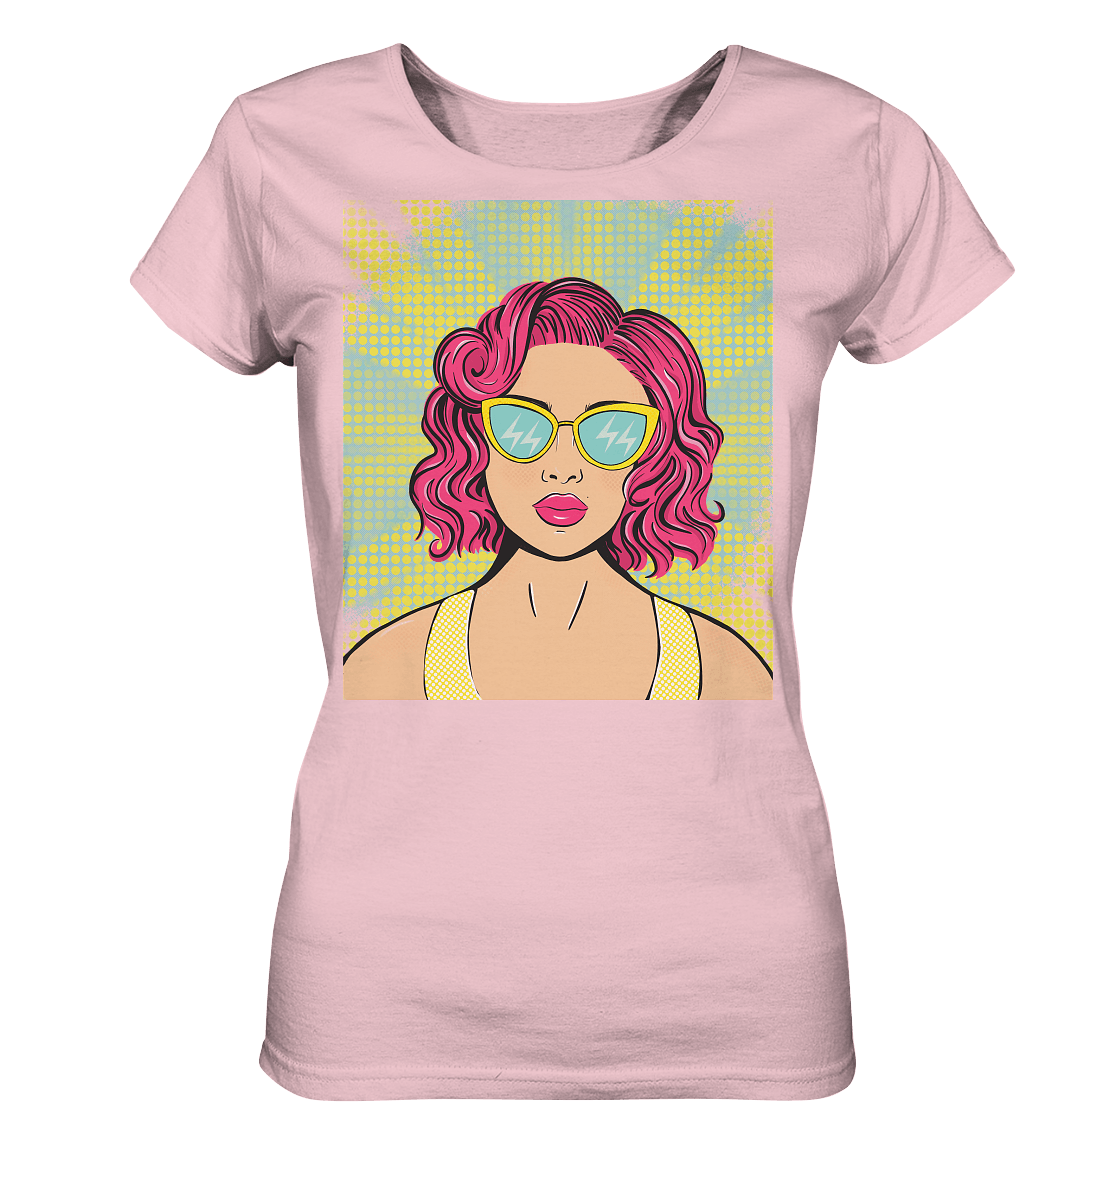 Damen T-Shirt mit Pop Art Design  in rosa Damen T-Shirt bedruckt mit handgezeichneten Pop Art Design. T-Shirt mit bunten Comic Pop Art Style Print von Bloominic